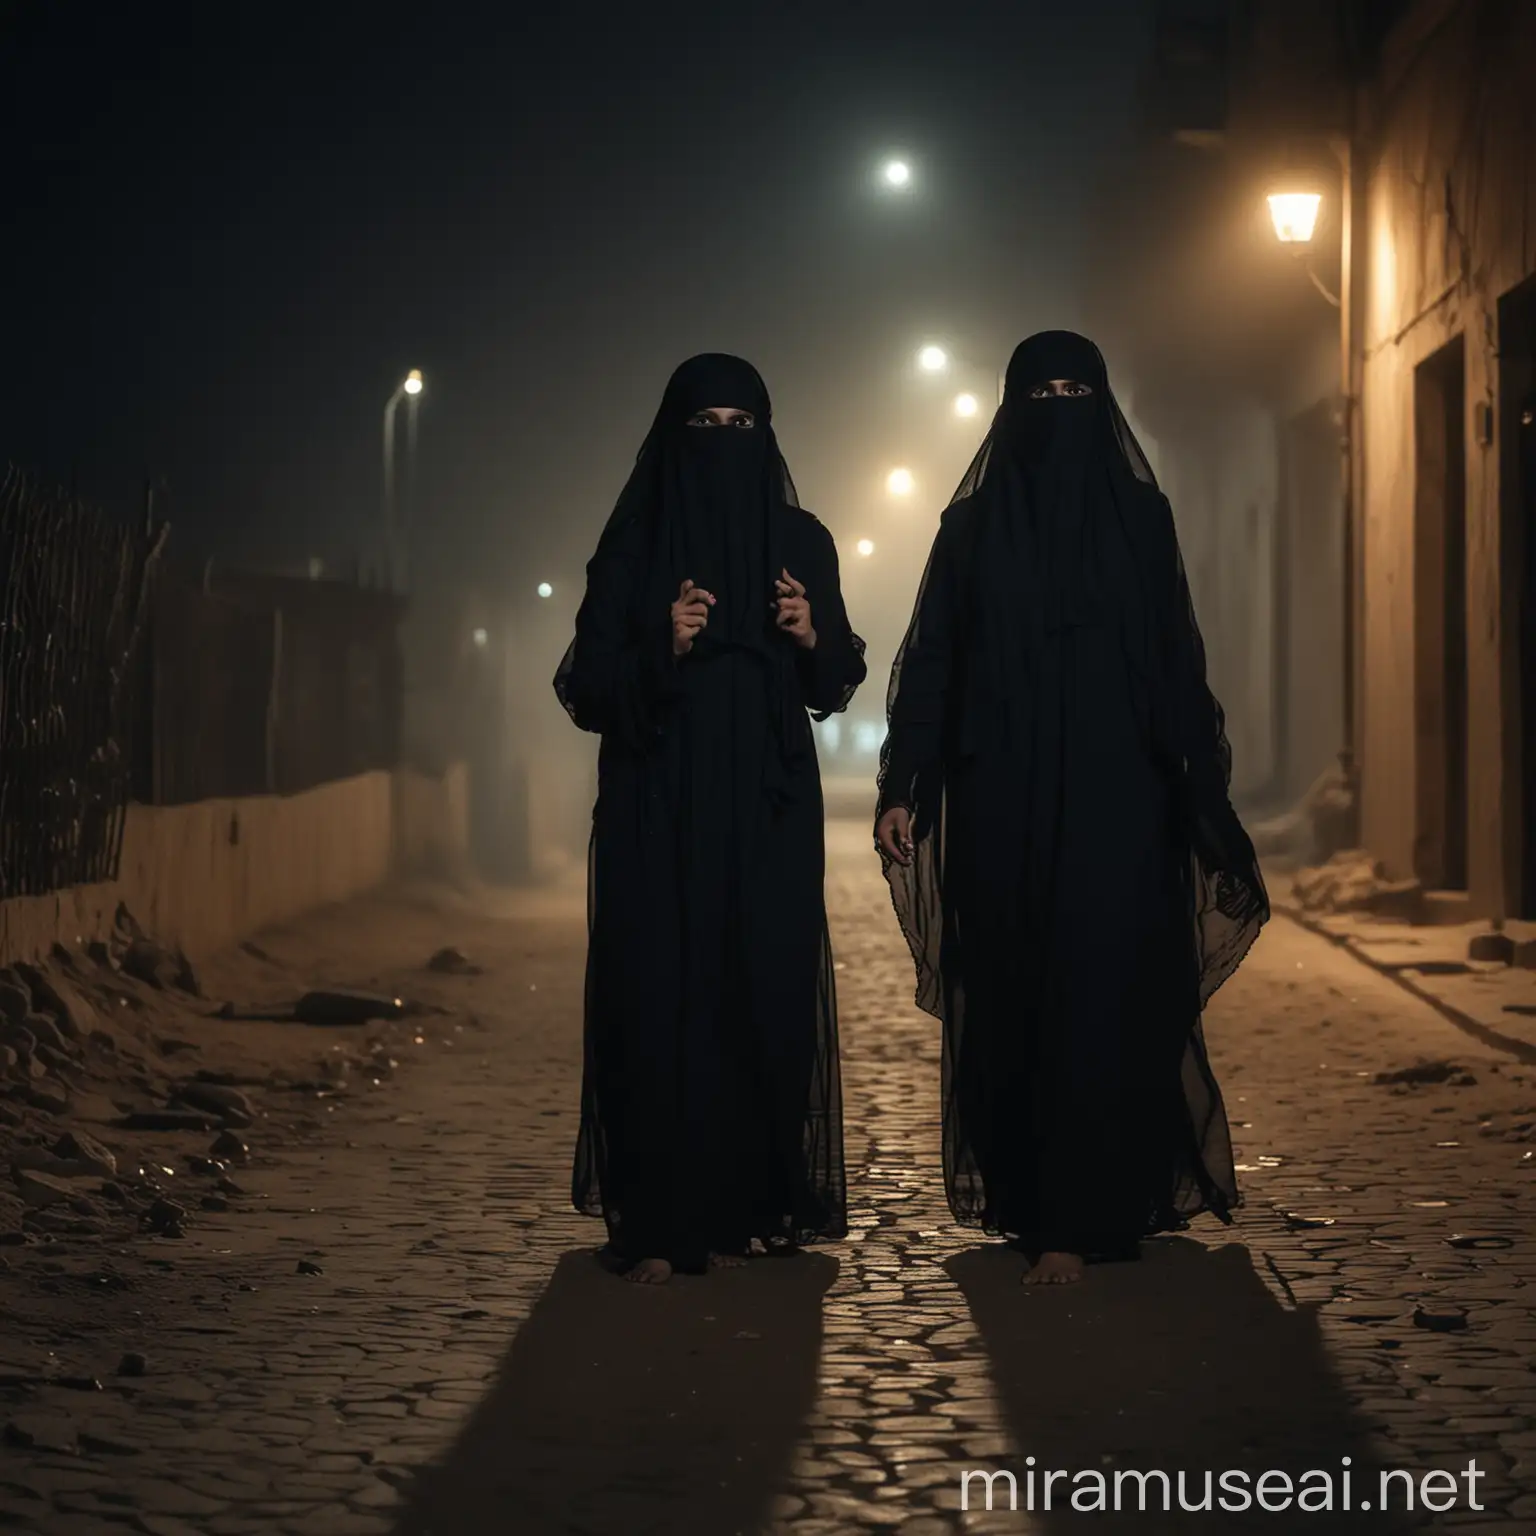 two women in burkha scared standing in night